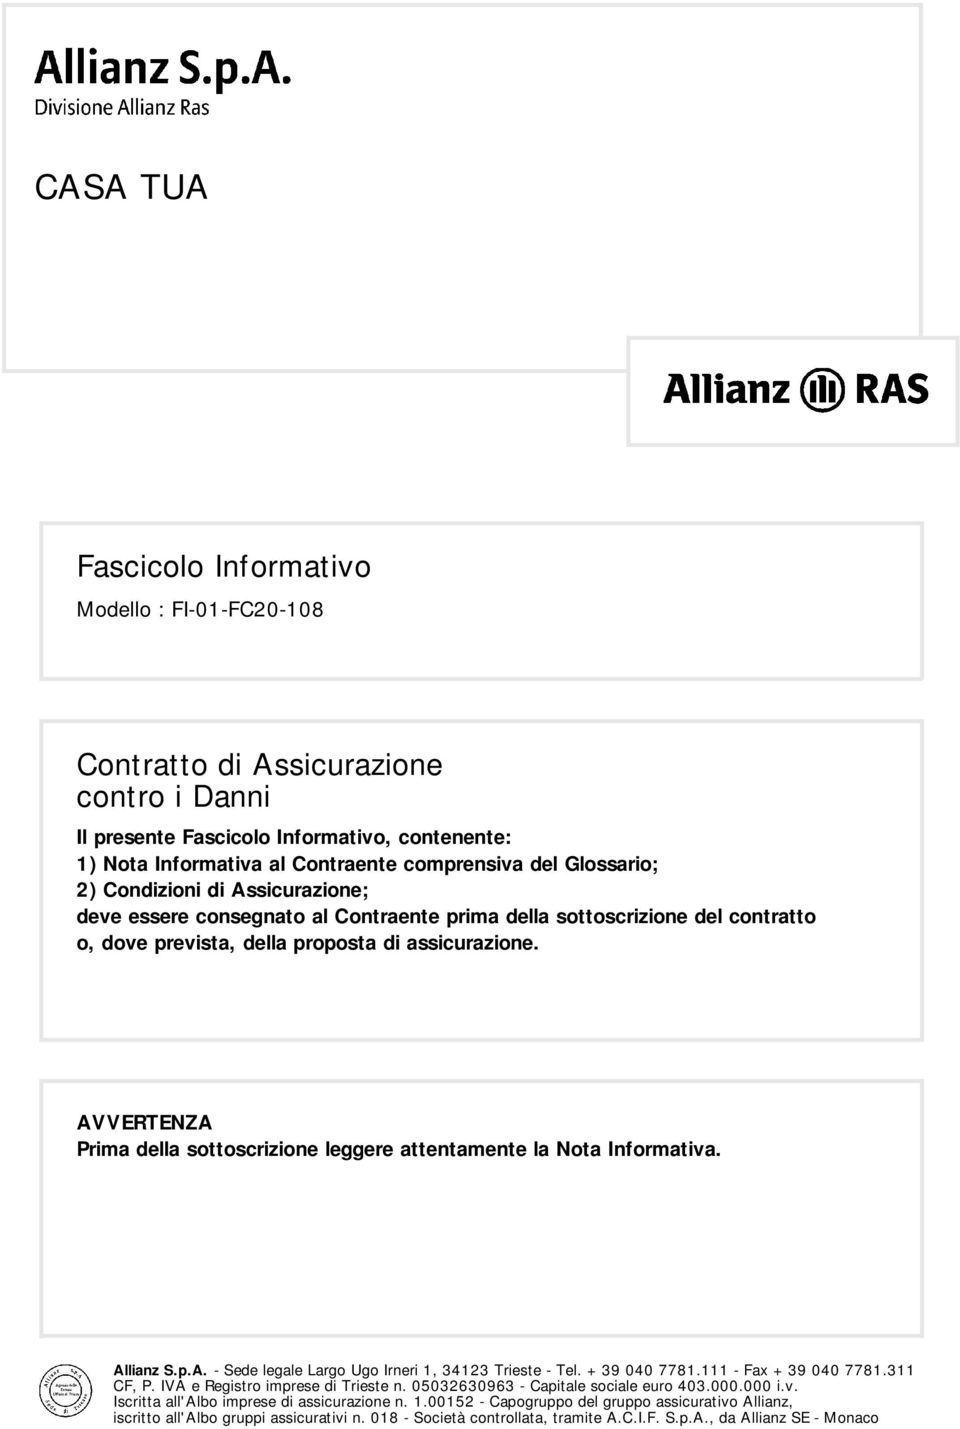 AVVERTENZA Prima della sottoscrizione leggere attentamente la Nota Informativa. Allianz S.p.A. - Sede legale Largo Ugo Irneri 1, 34123 Trieste - Tel. +39 040 7781.111 - Fax +39 040 7781.311 CF, P.